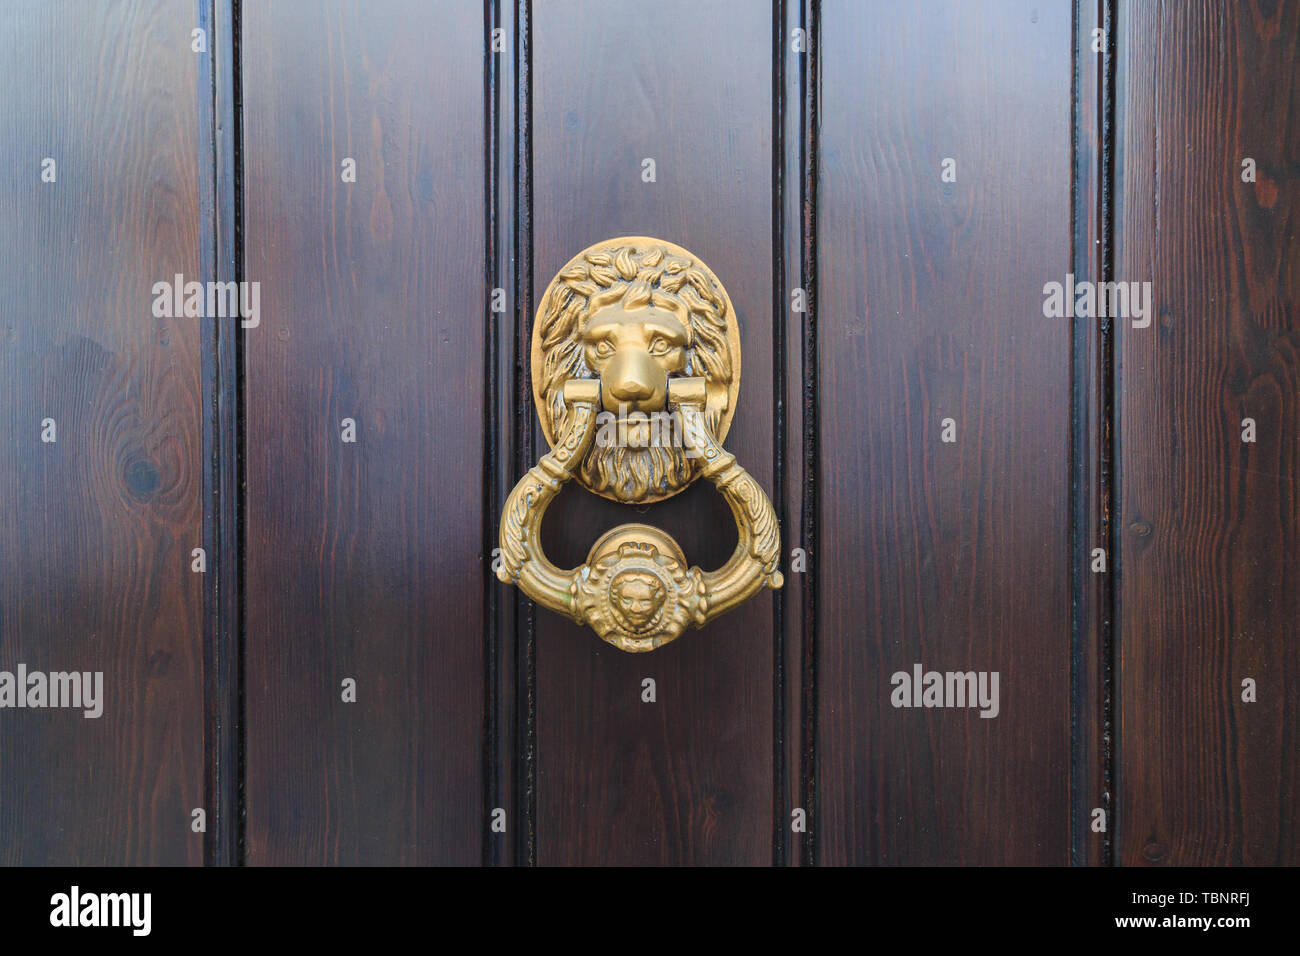 Lion head door knock on an old new wooden door in Malaga, Spain Stock Photo